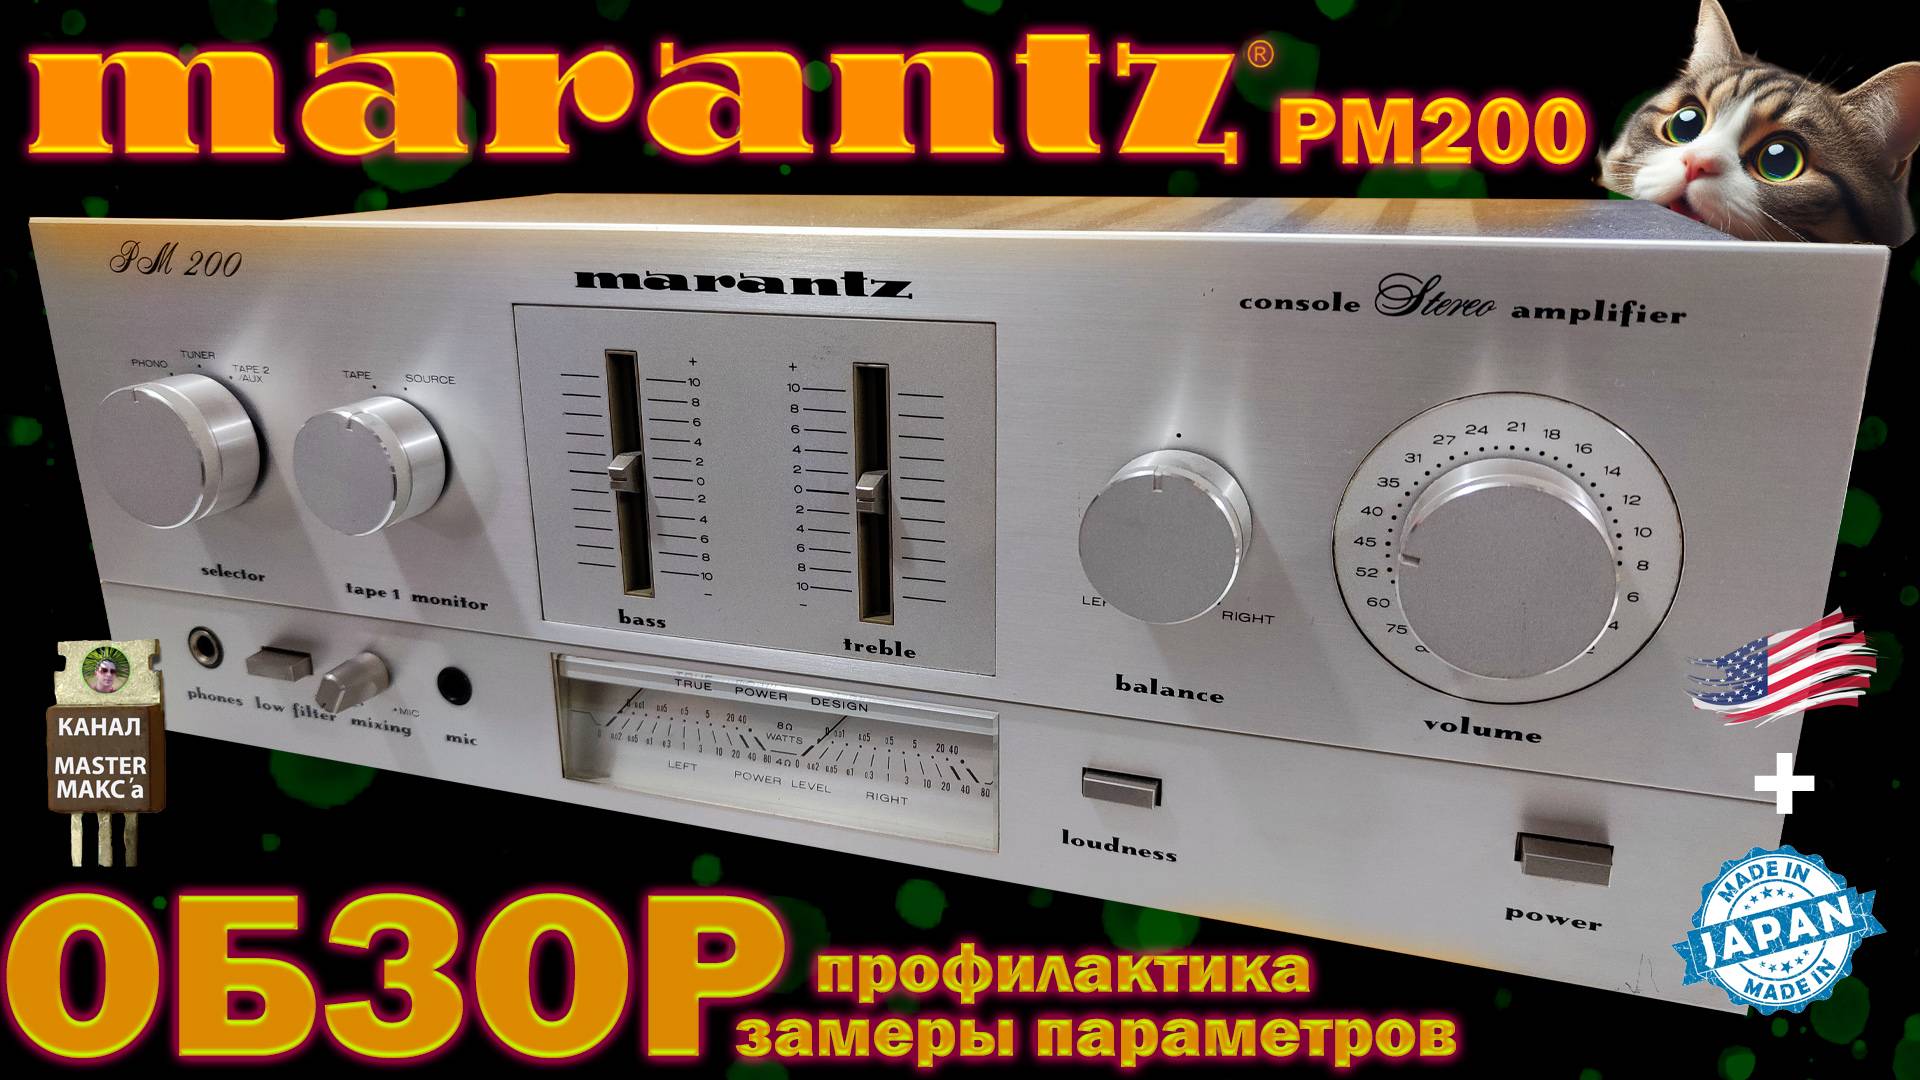 Marantz pm200 Идеальное состояние. Обзор и профилактика.